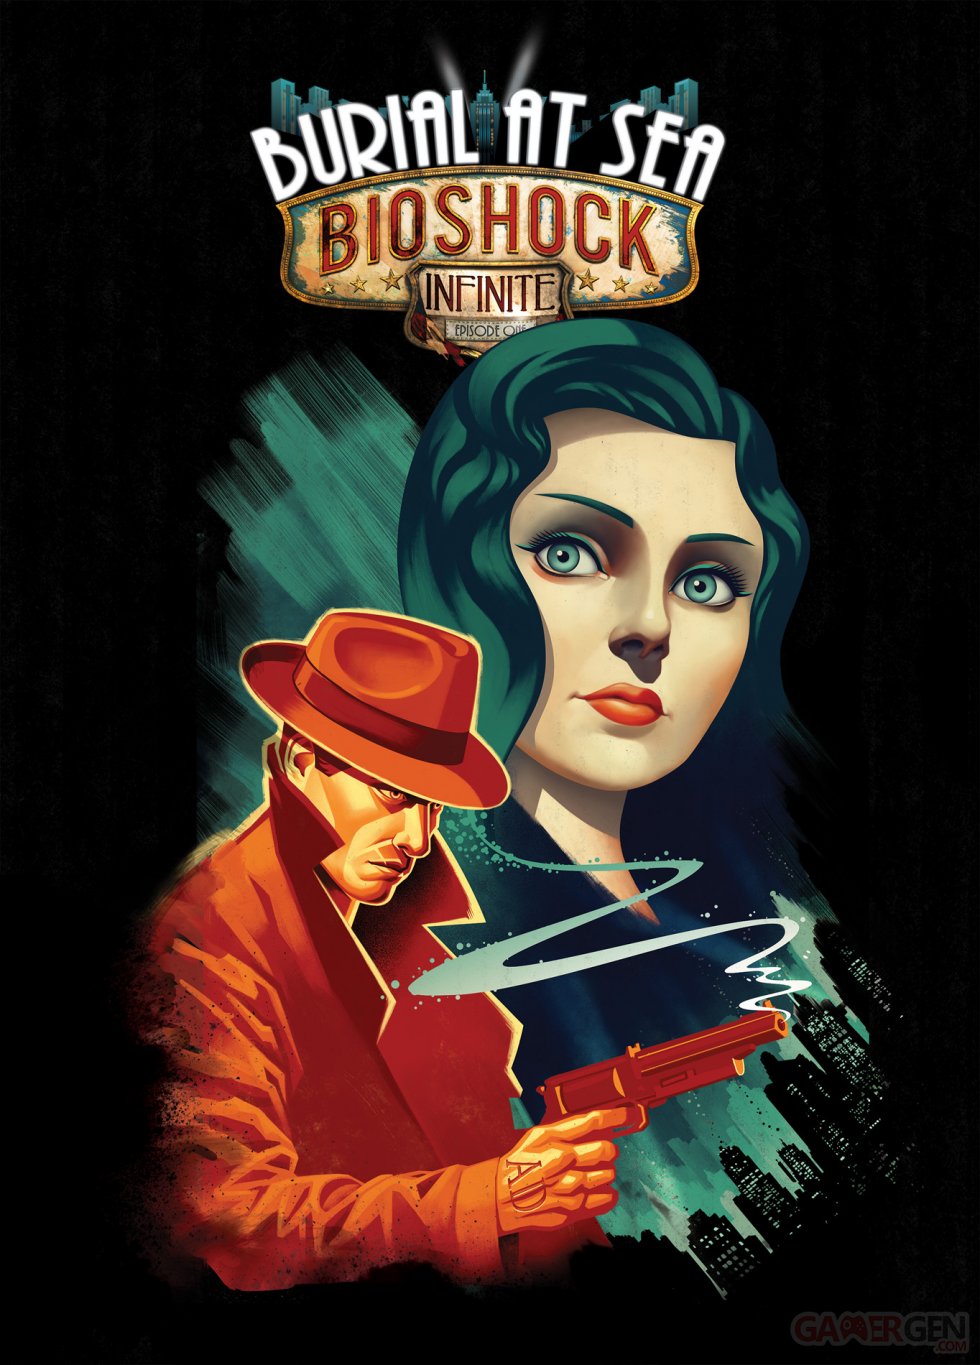 BioShock-Infinite-Burial-at-the-Sea_30-07-2013 (4)